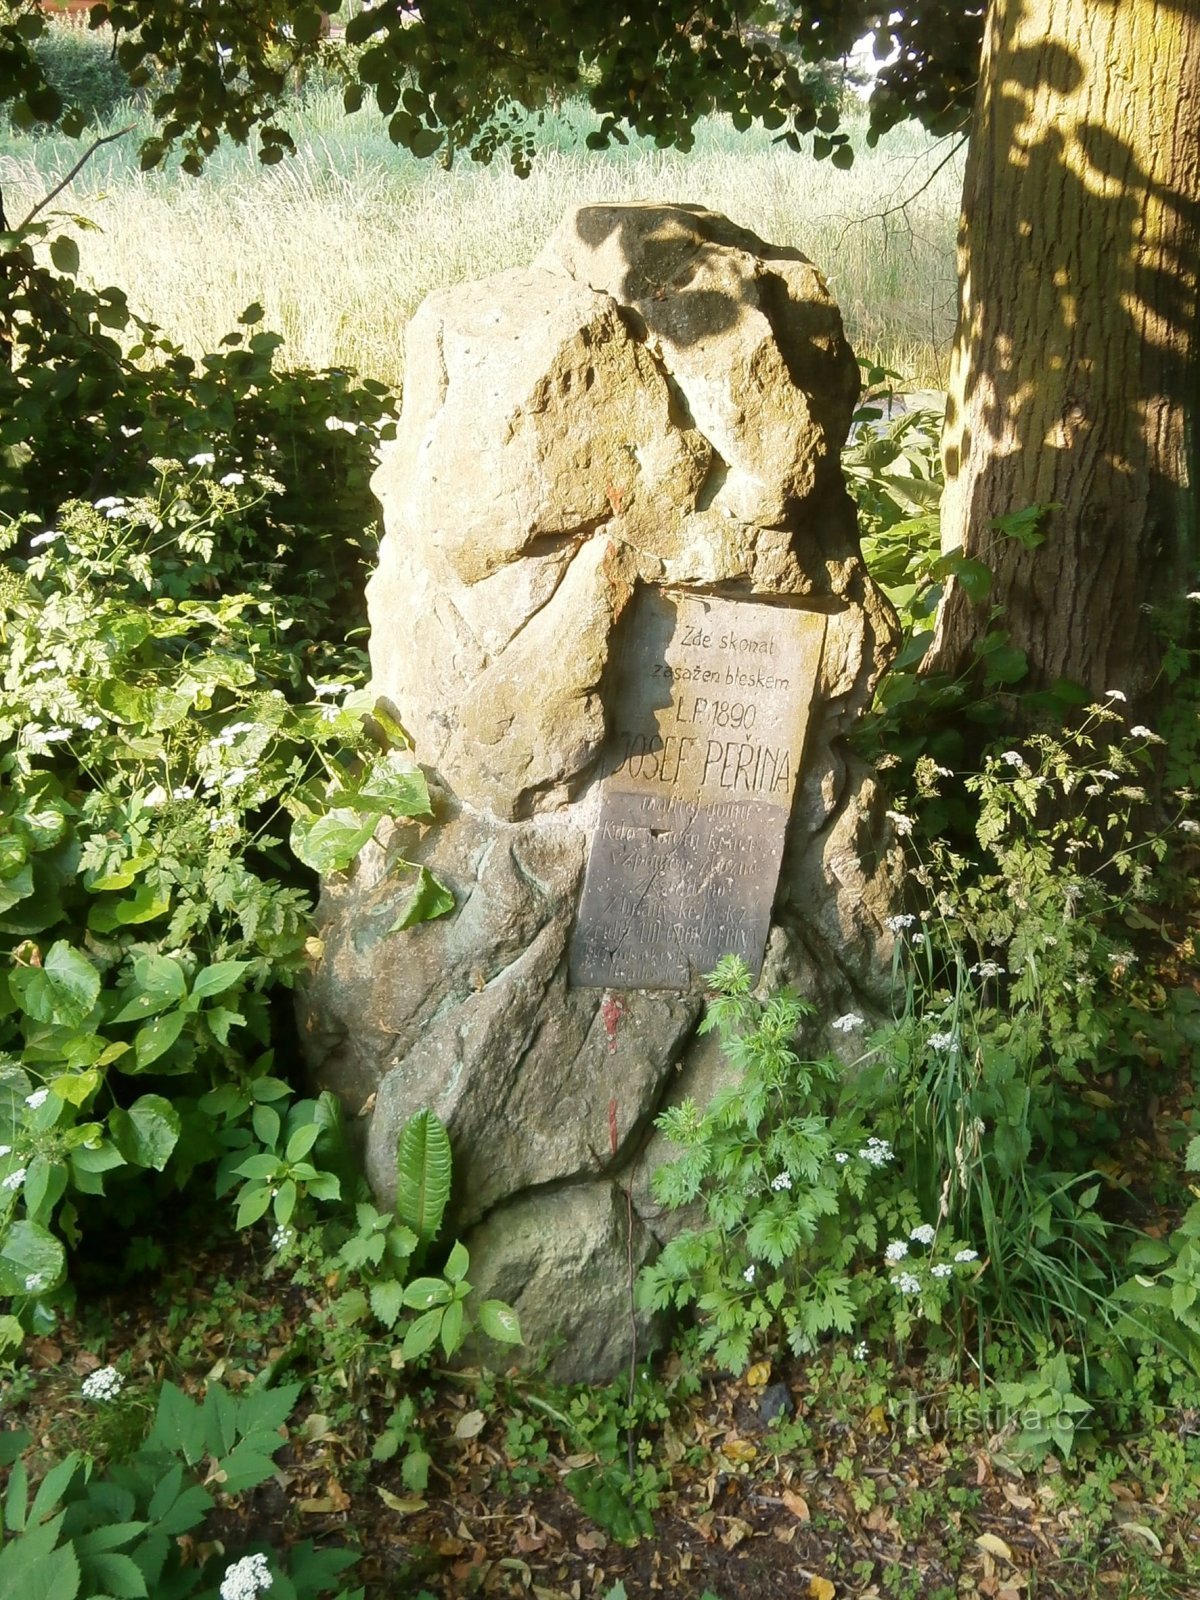 Памятник Йозефу Пержине (Градец Кралове, 23.6.2013)